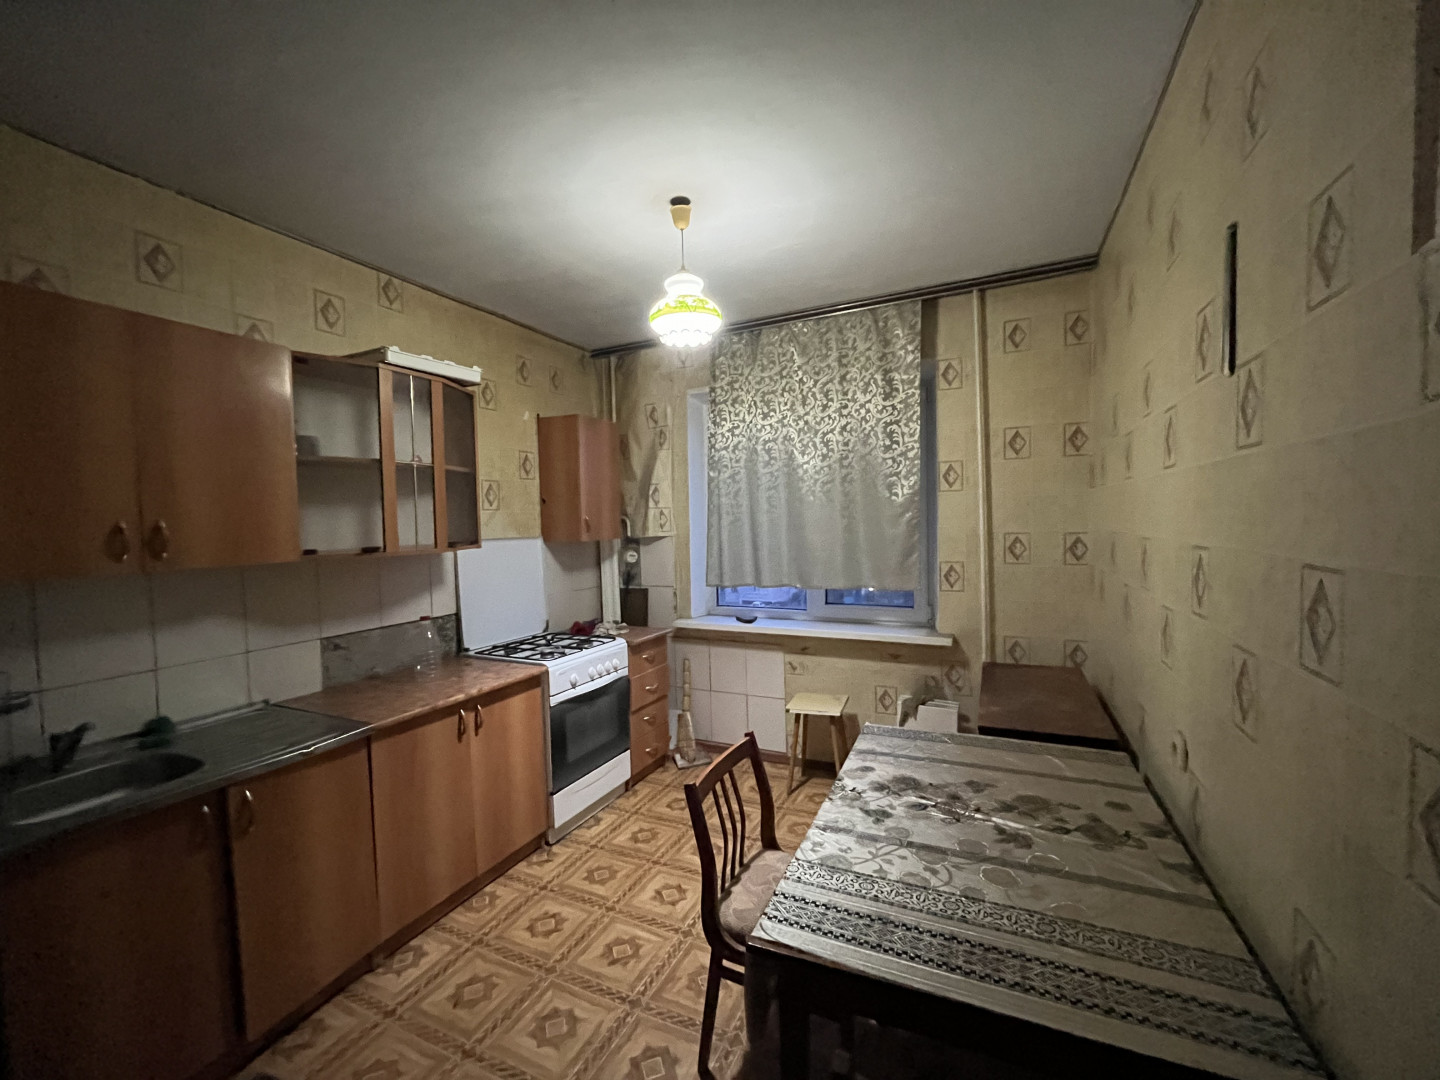 Квартира 3 комнатная в Майкоп г. район Черемушки р-н